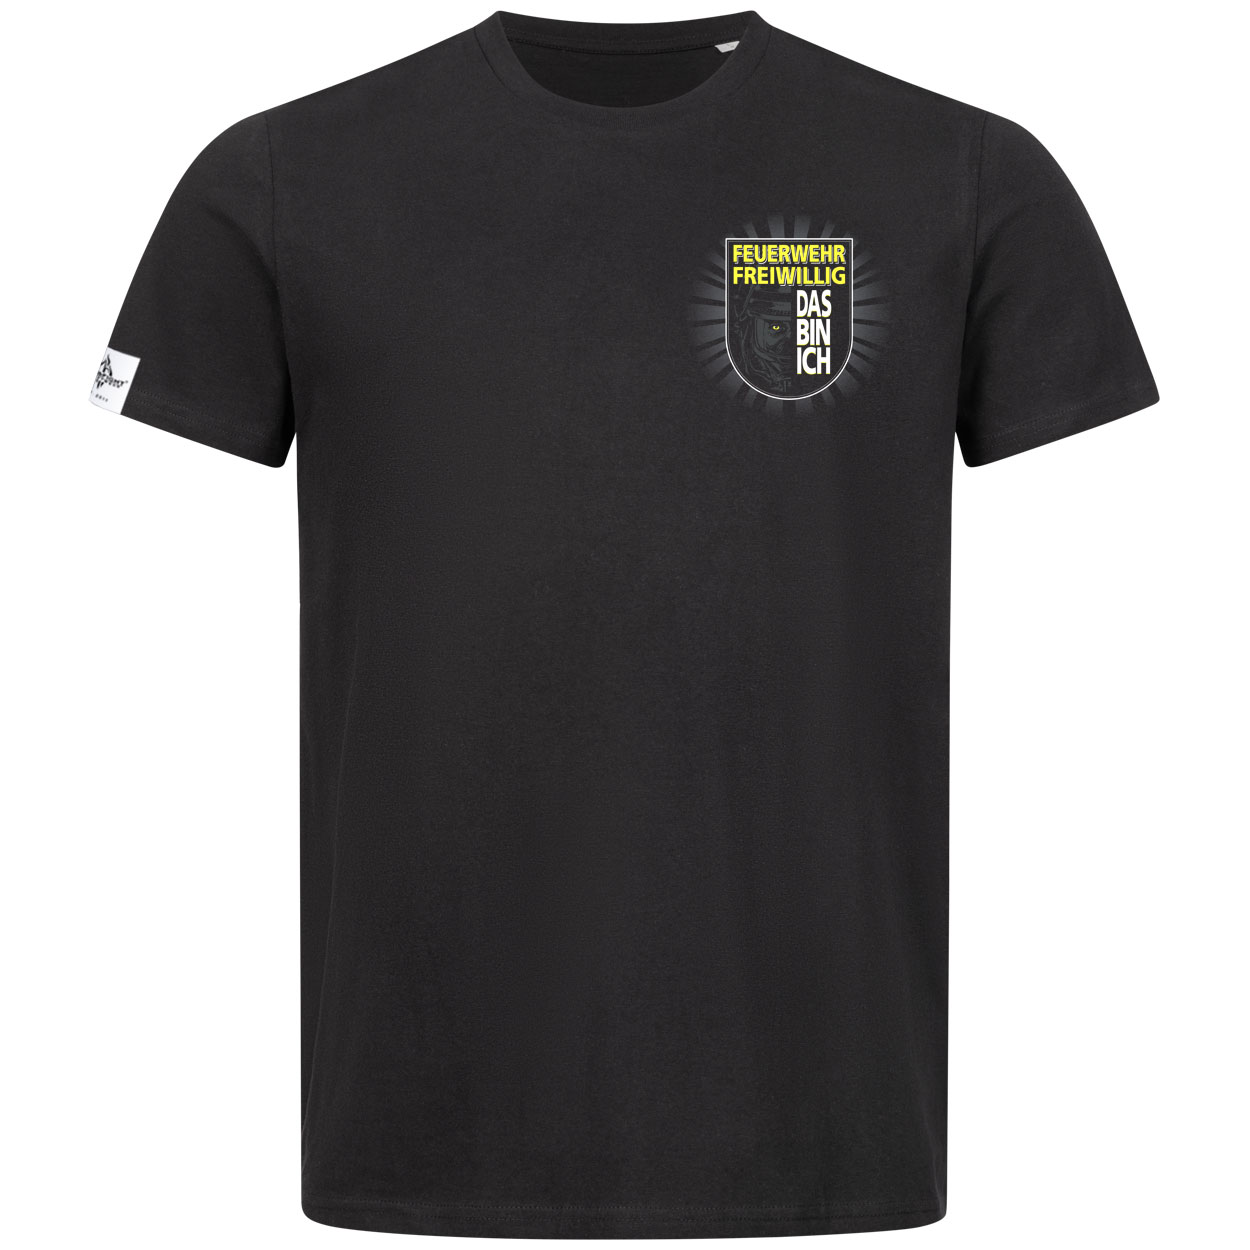 Feuerwehr Freiwillig - Das bin ich Herren T-Shirt